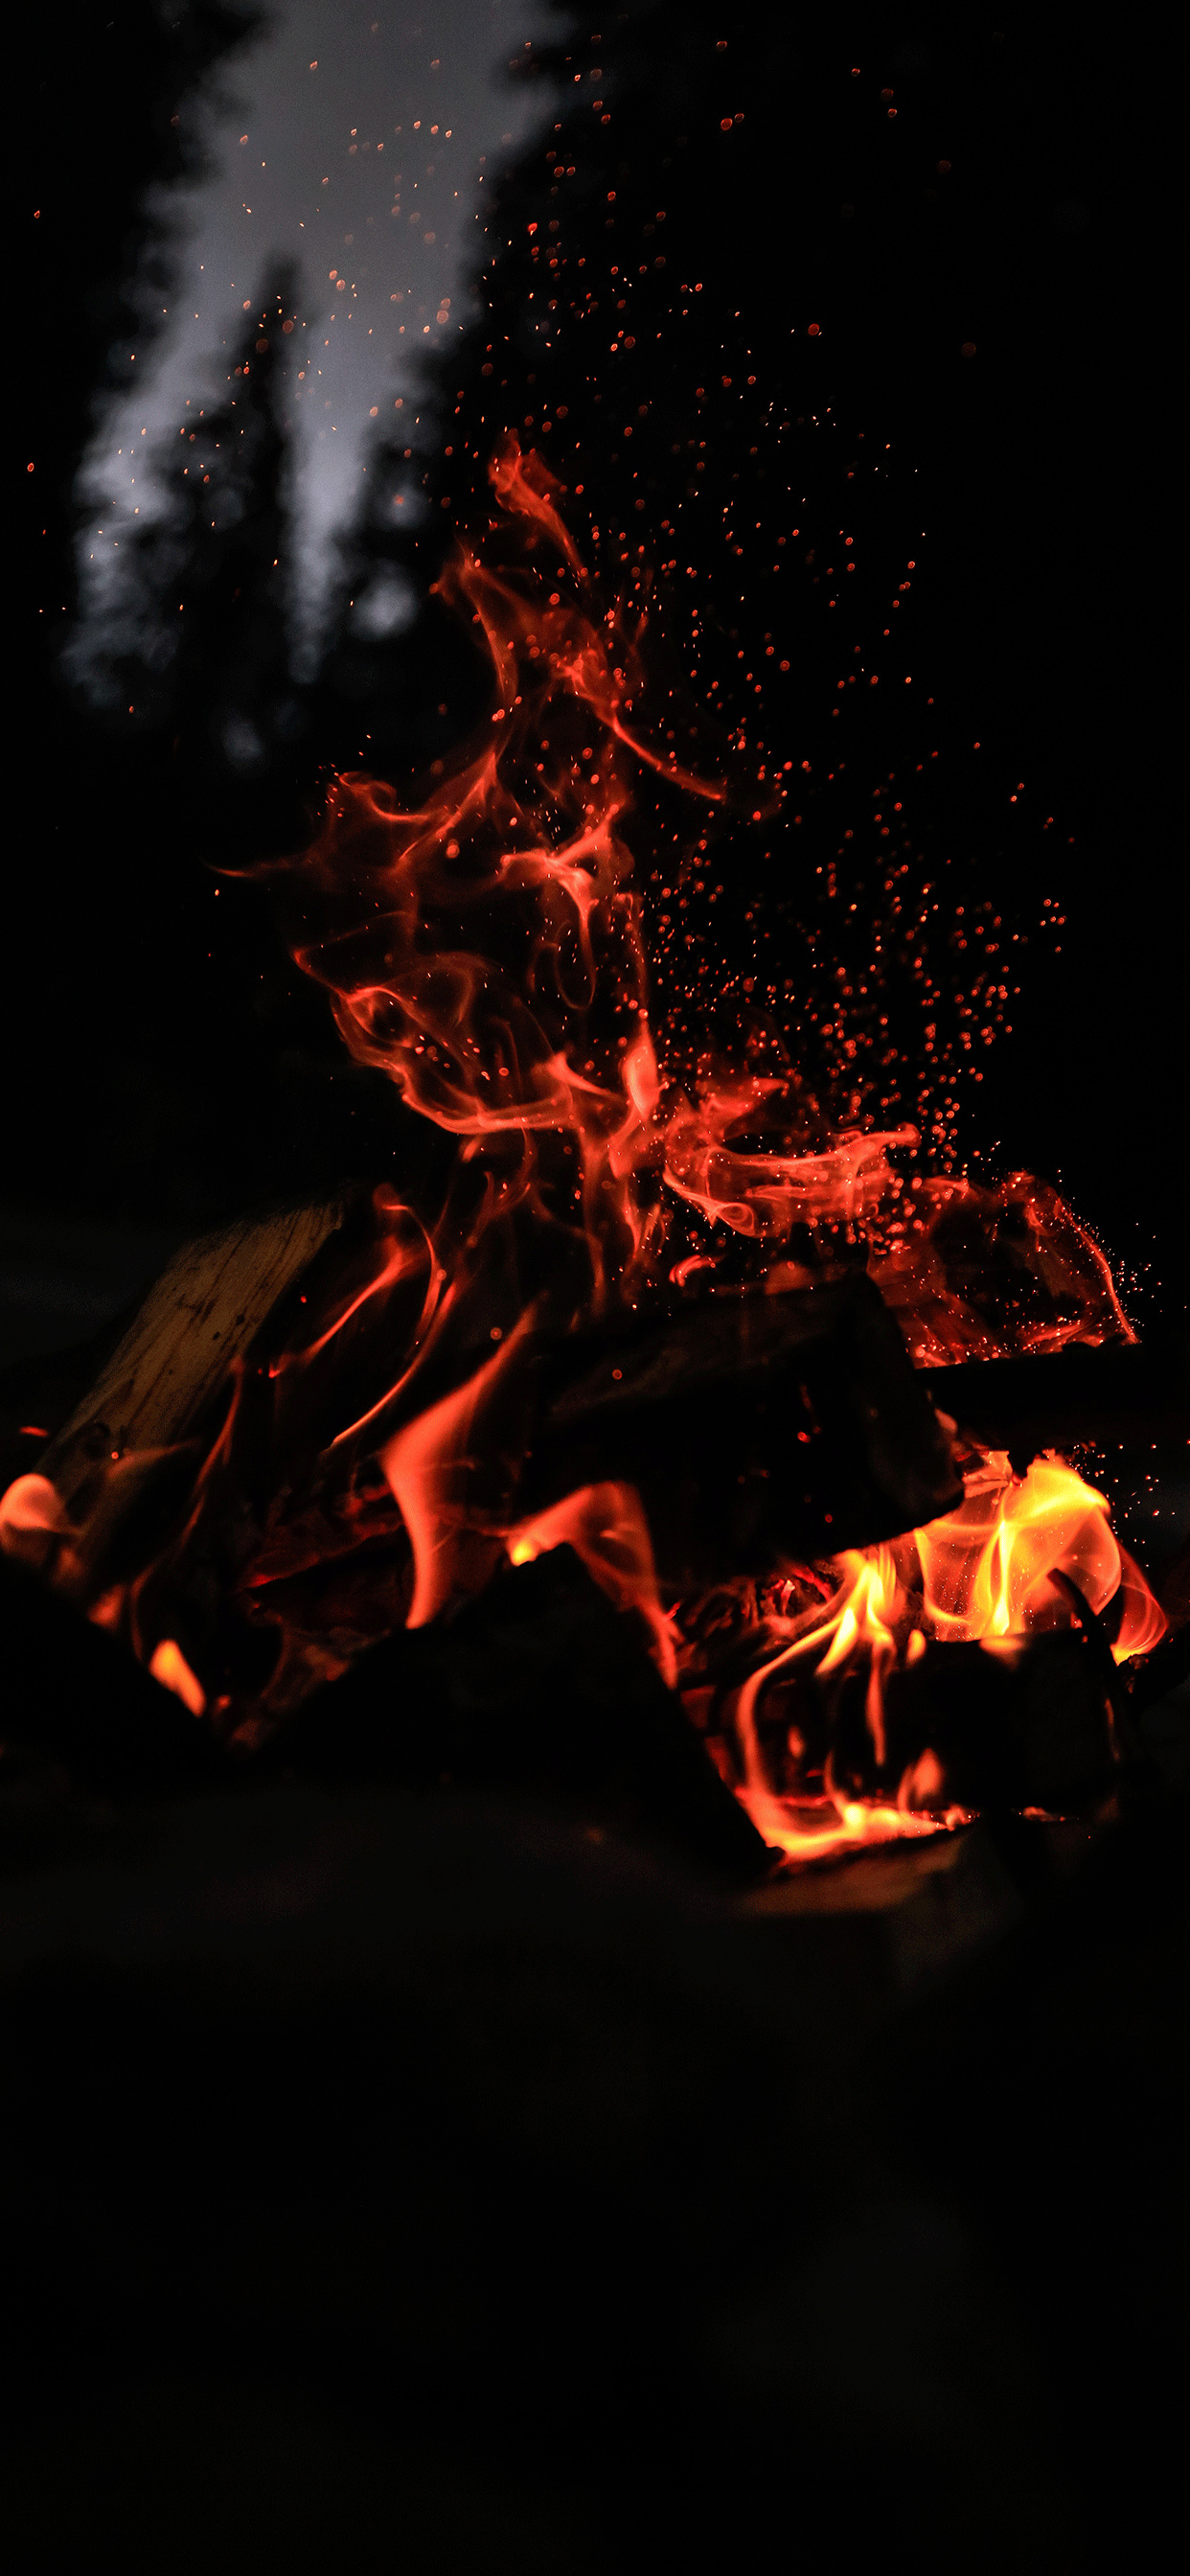 Fireplace: A large open-air fire, Heat, Flame. 1250x2690 HD Wallpaper.